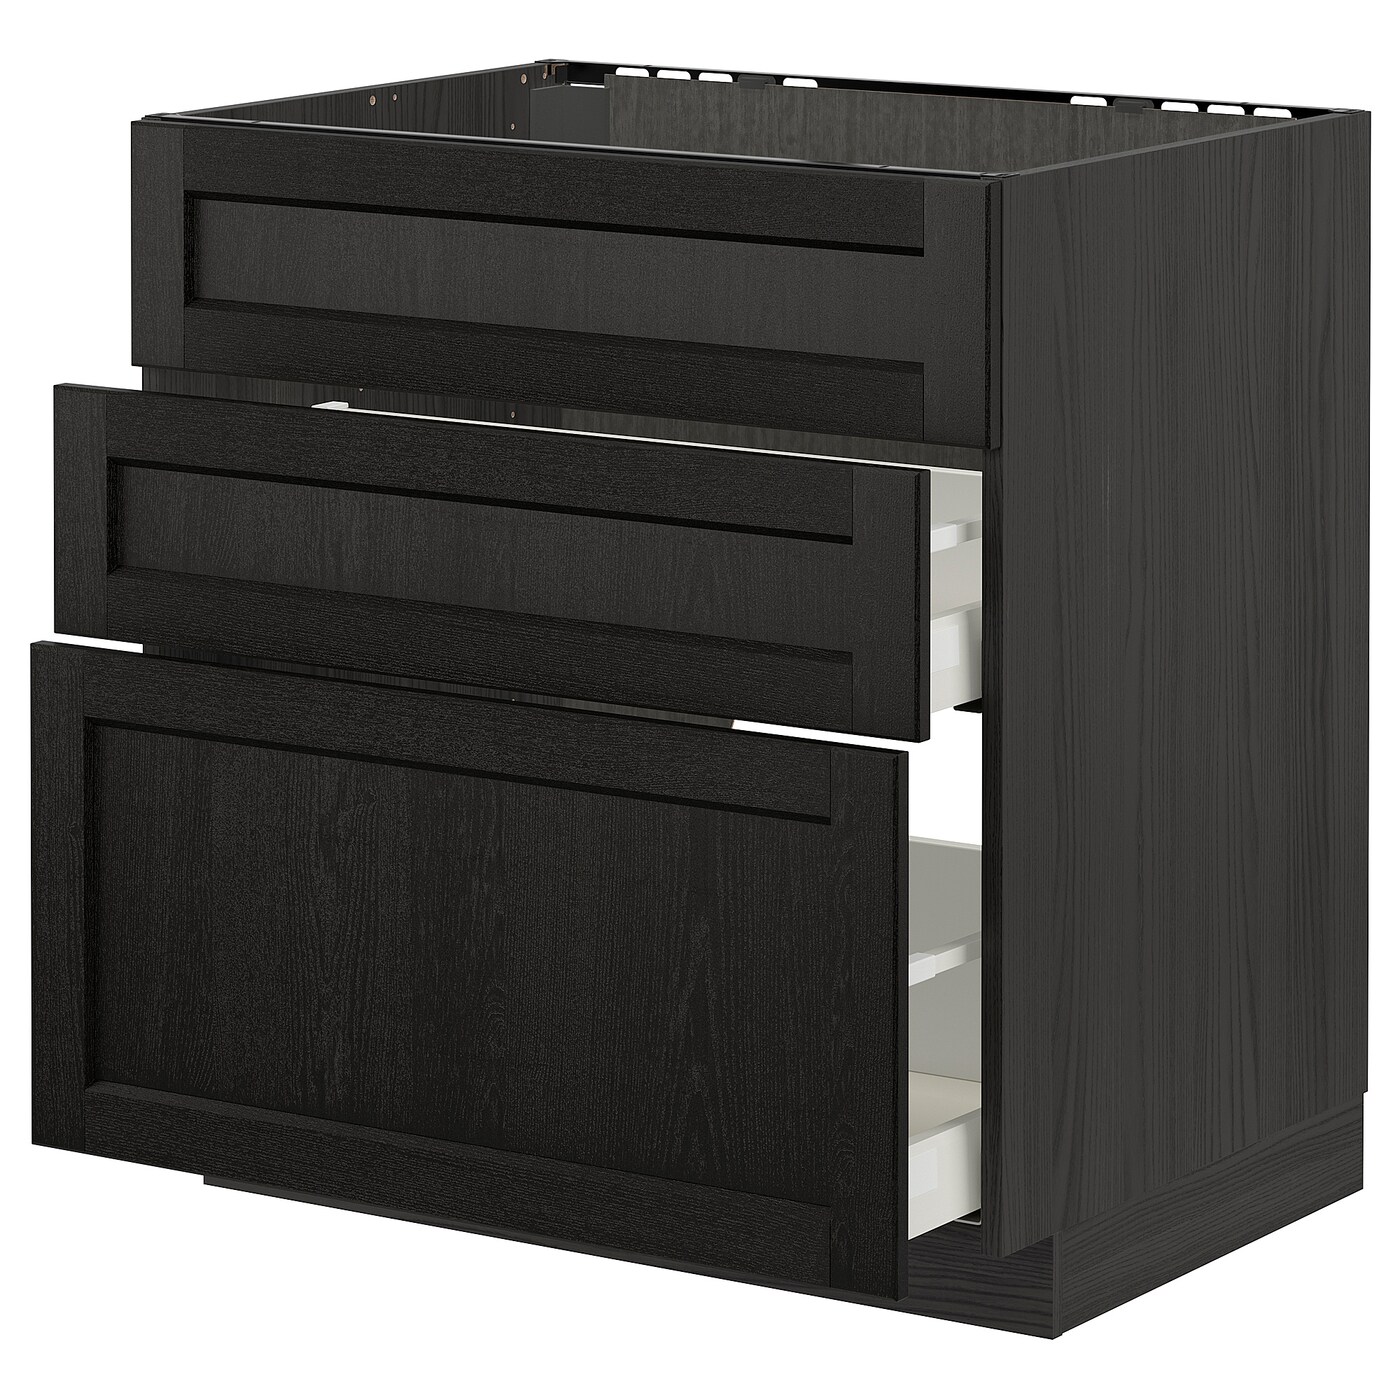 Напольный кухонный шкаф  - IKEA METOD MAXIMERA, 62x80x80см, черный, МЕТОД МАКСИМЕРА ИКЕА